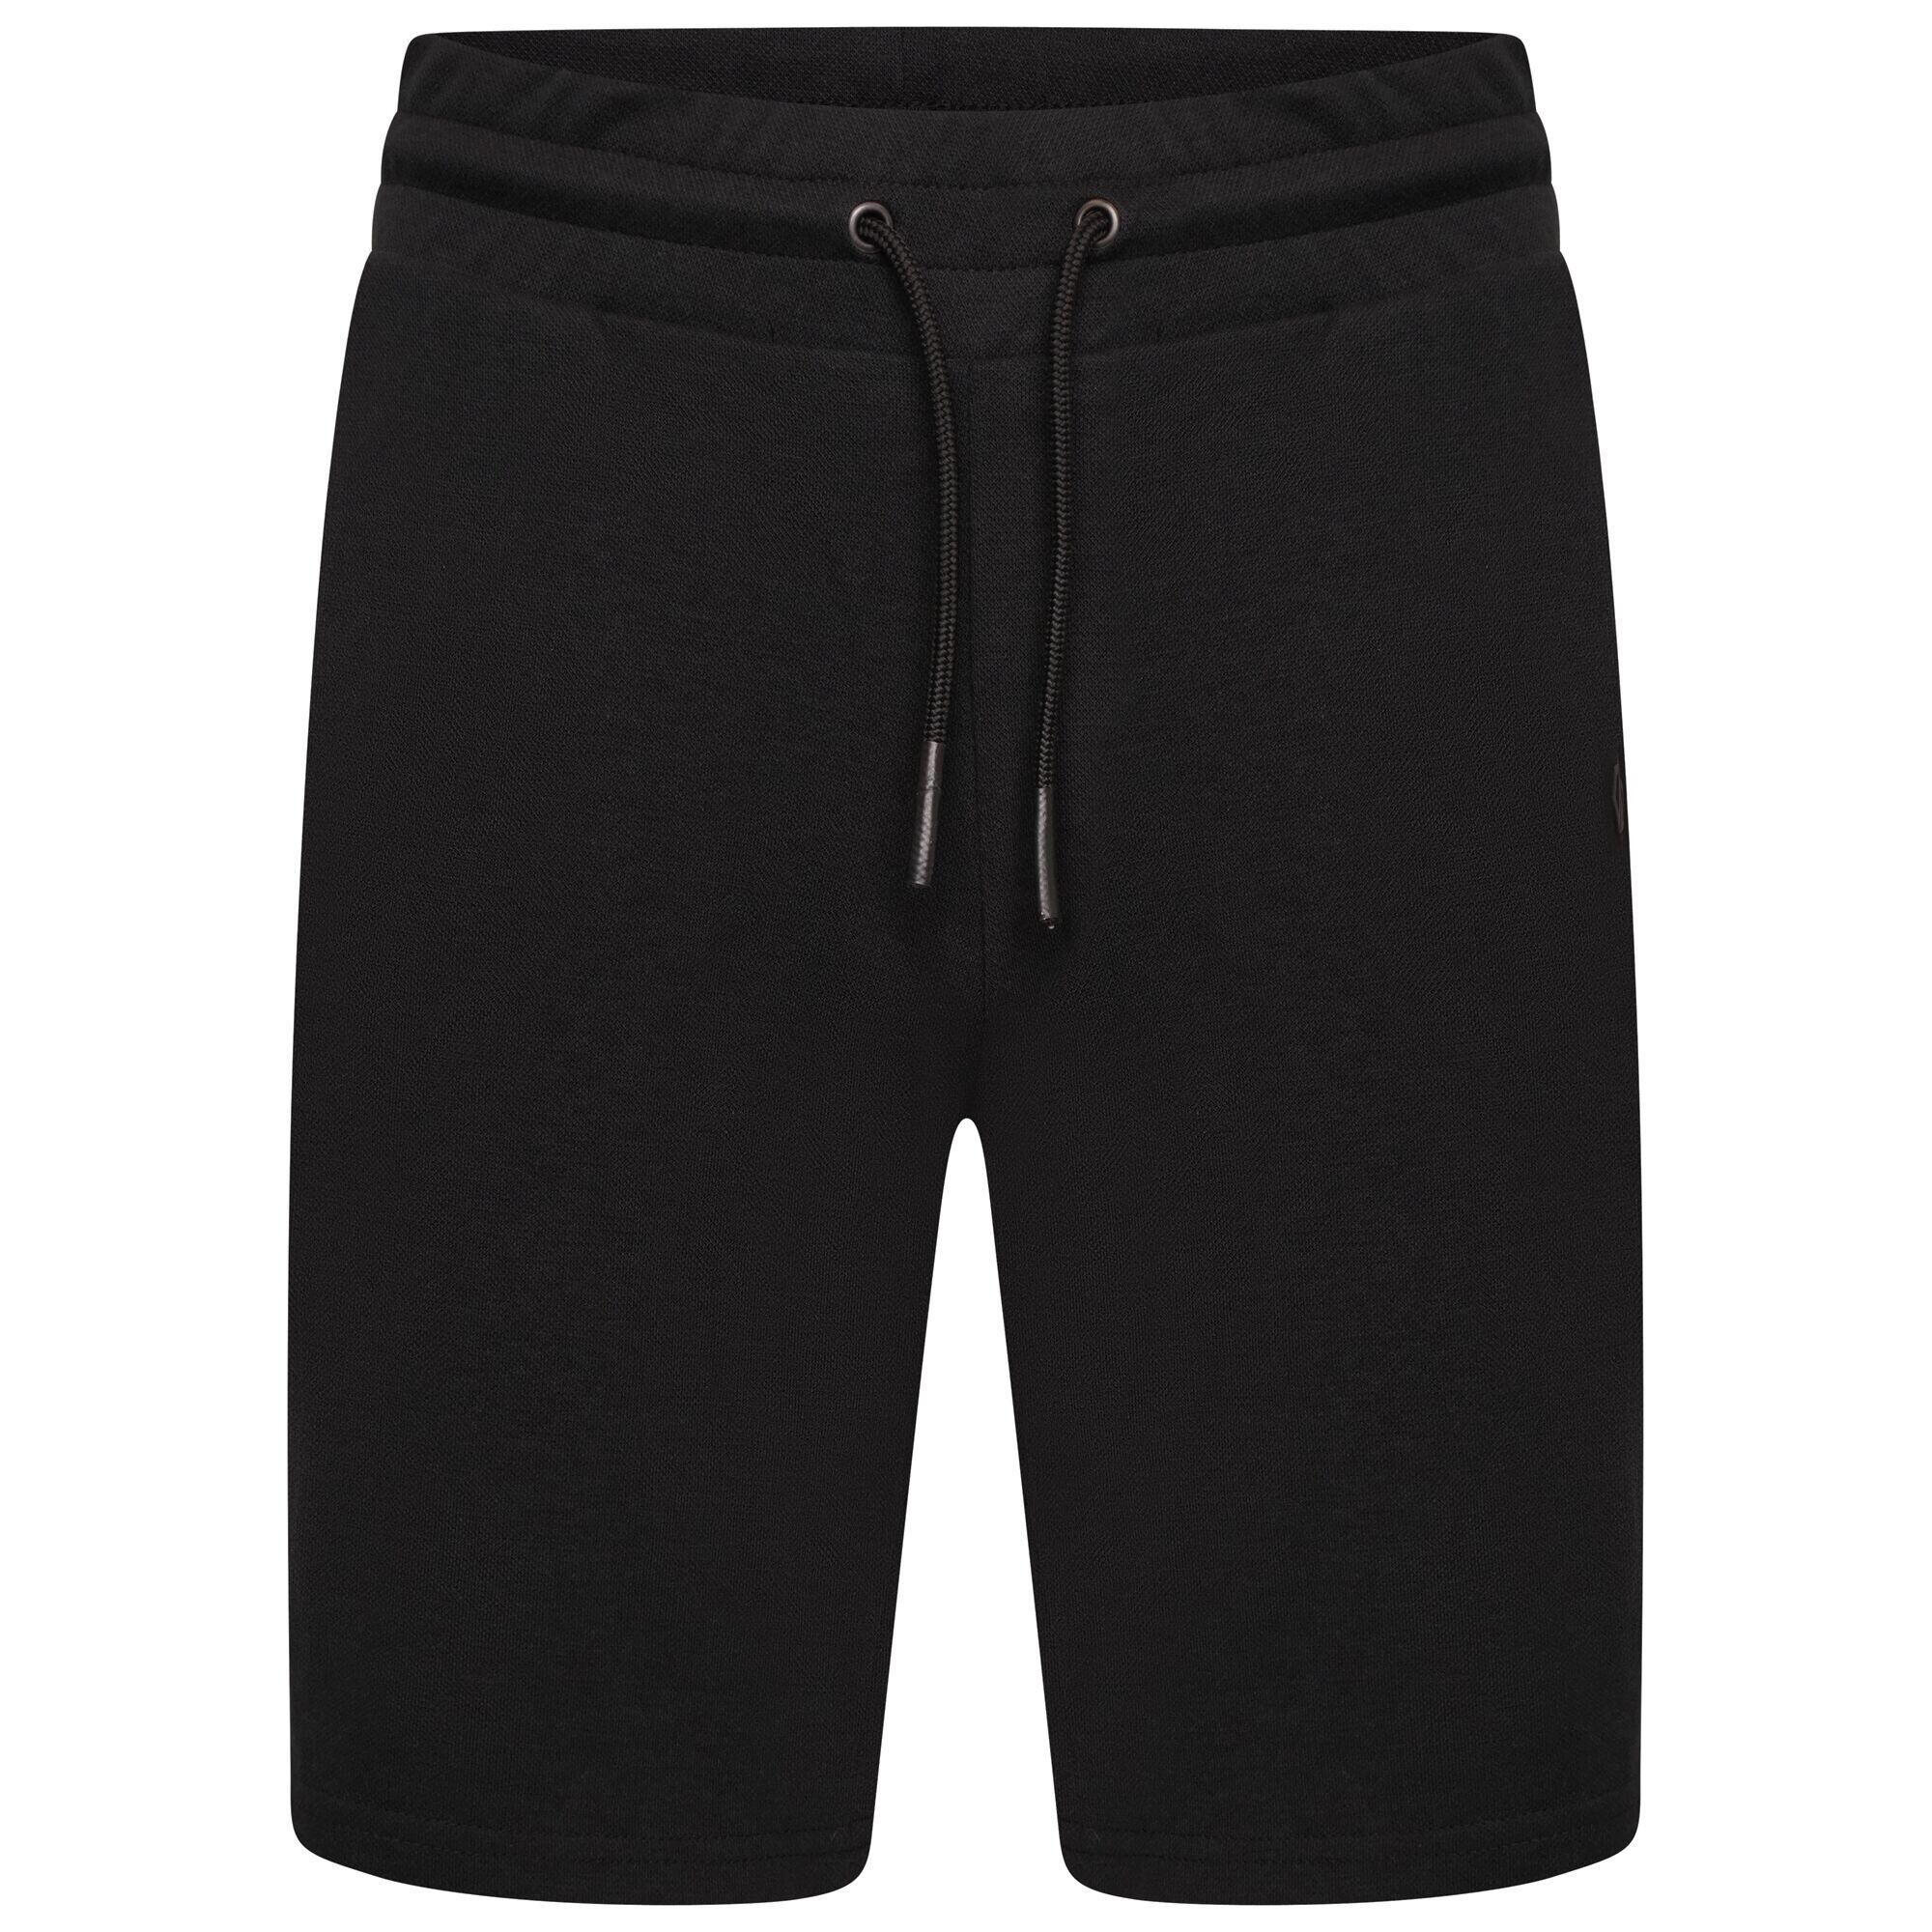 DARE 2B Mens Continual Drawstring Shorts (Black)